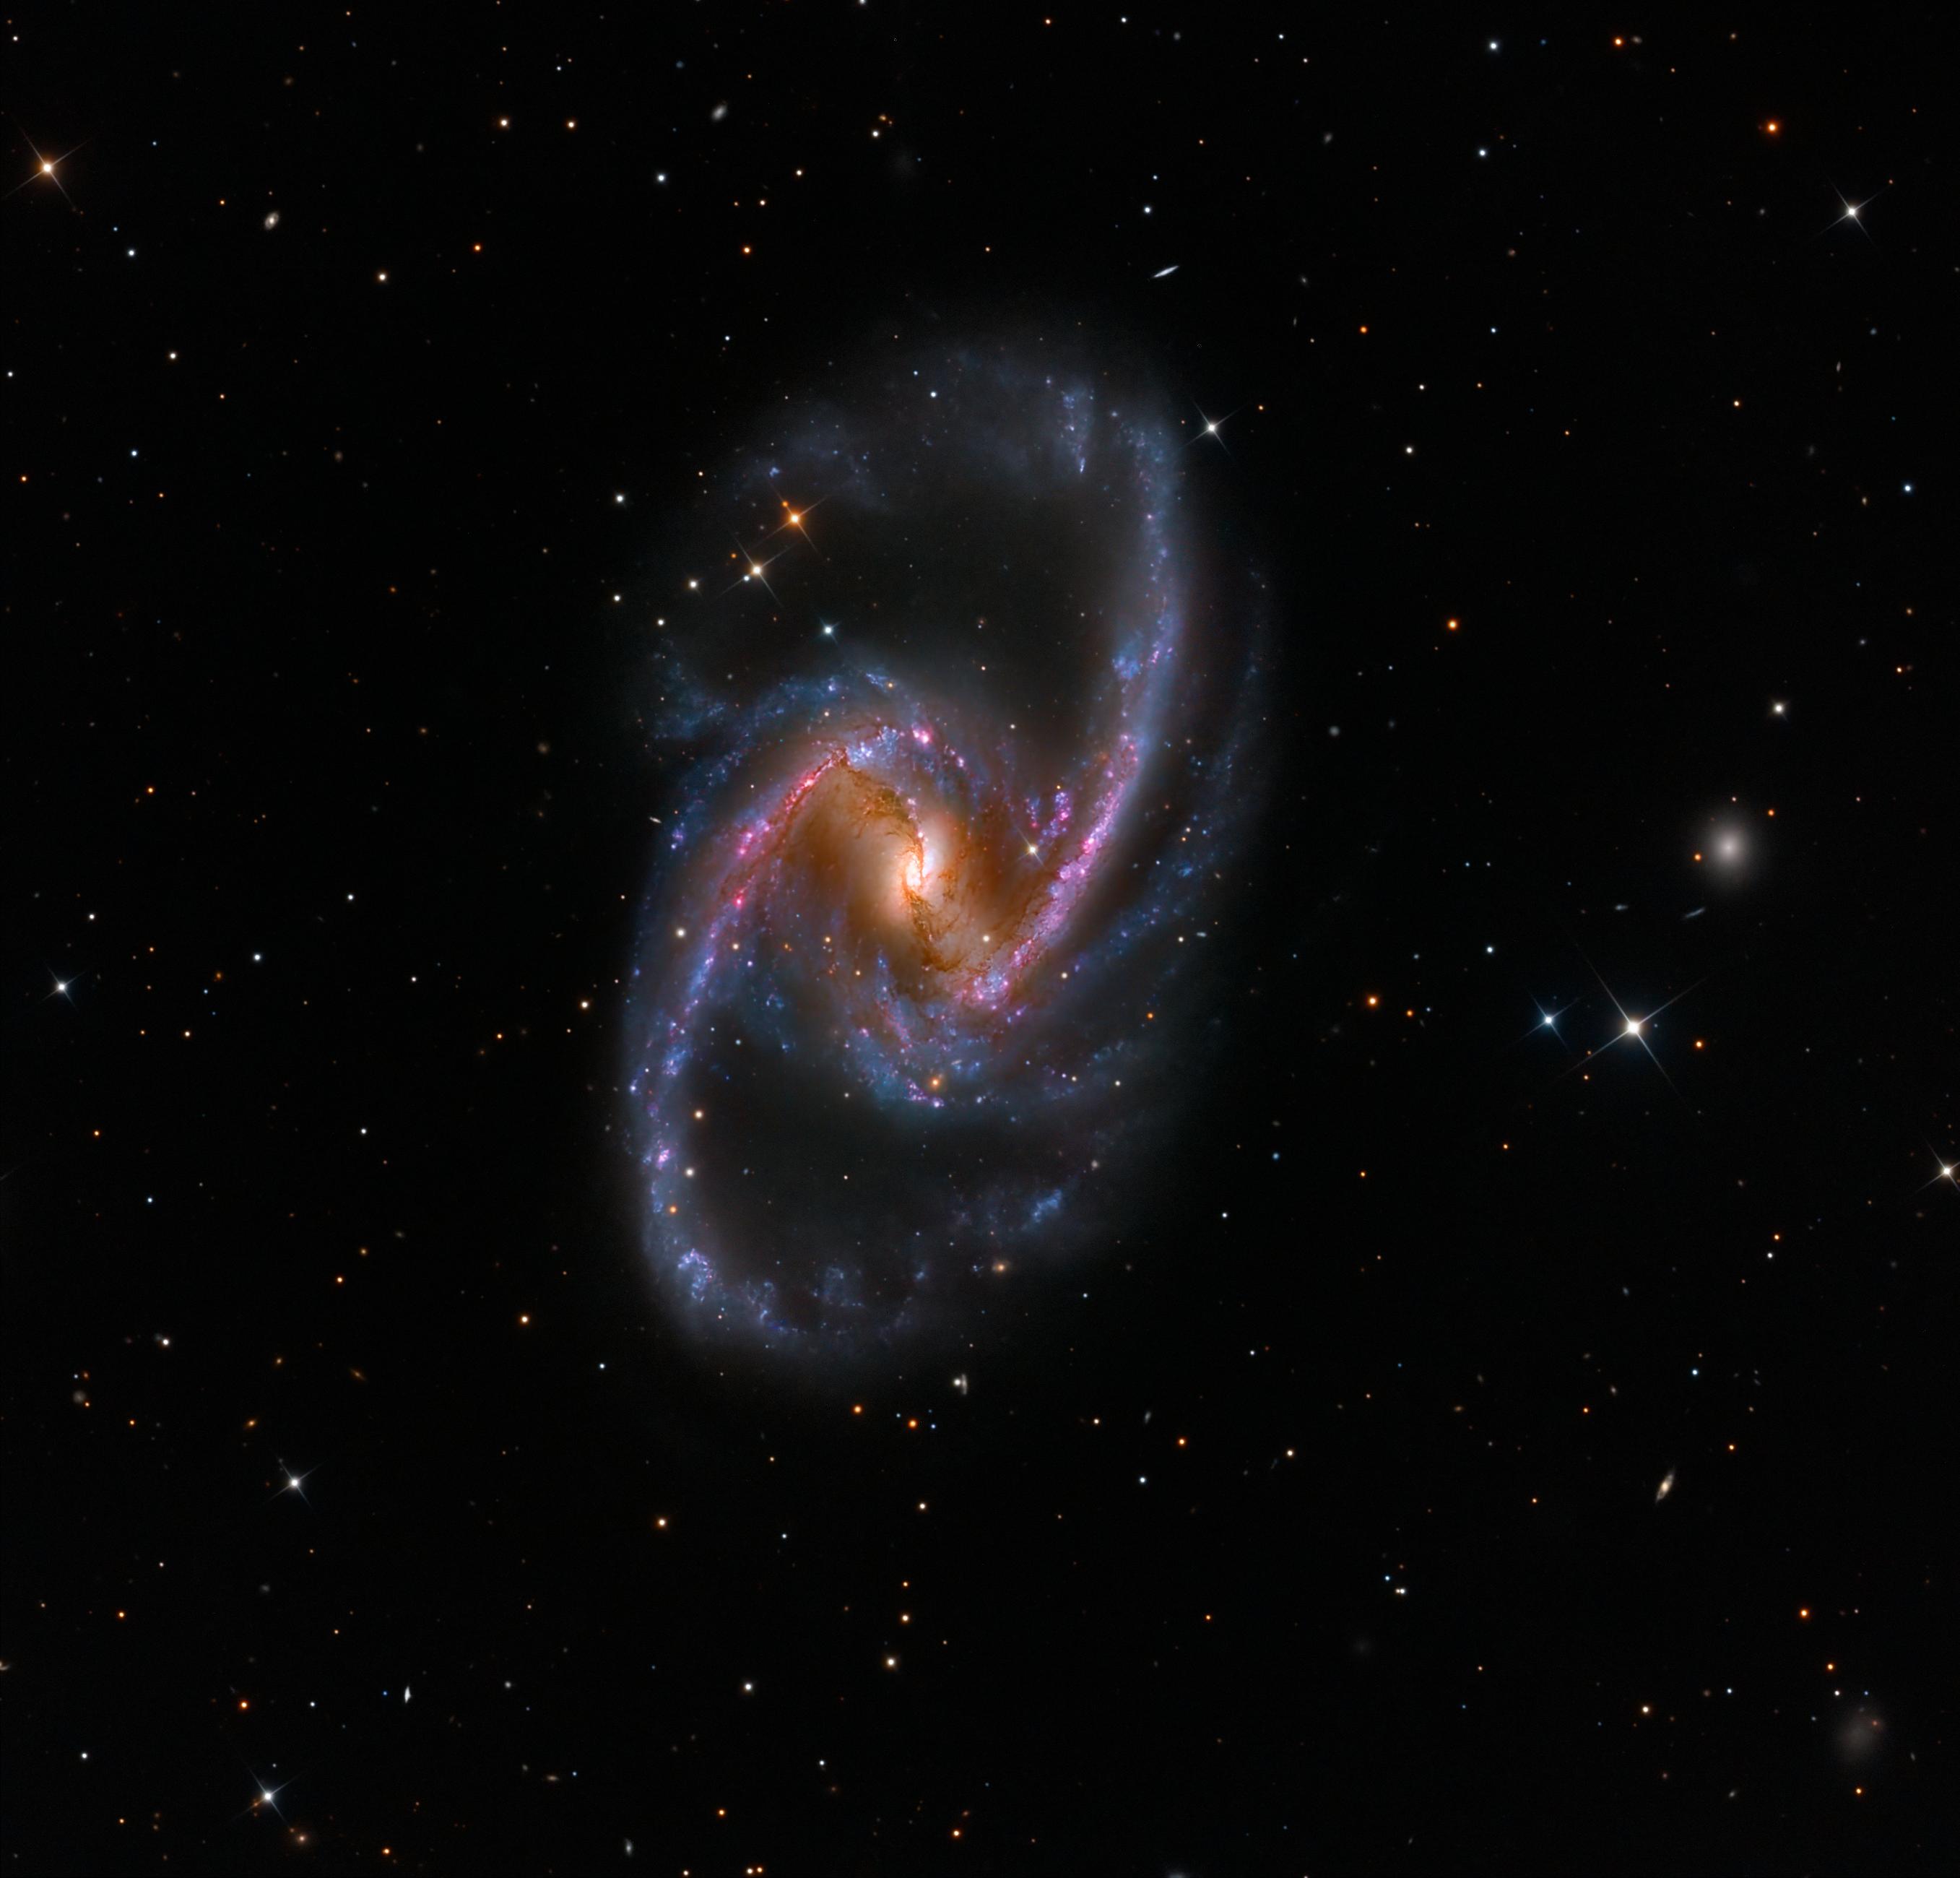 مجرّة "إن‌جي‌سي 1365" الحلزونيّة الضلعيّة مع مناطق تشكّل النجوم المُحمرّة، بالإضافة لممرات الغبار المُعتِم أمام النواة التي يقع ثقبٌ أسودٌ مركزيٌّ عندها.